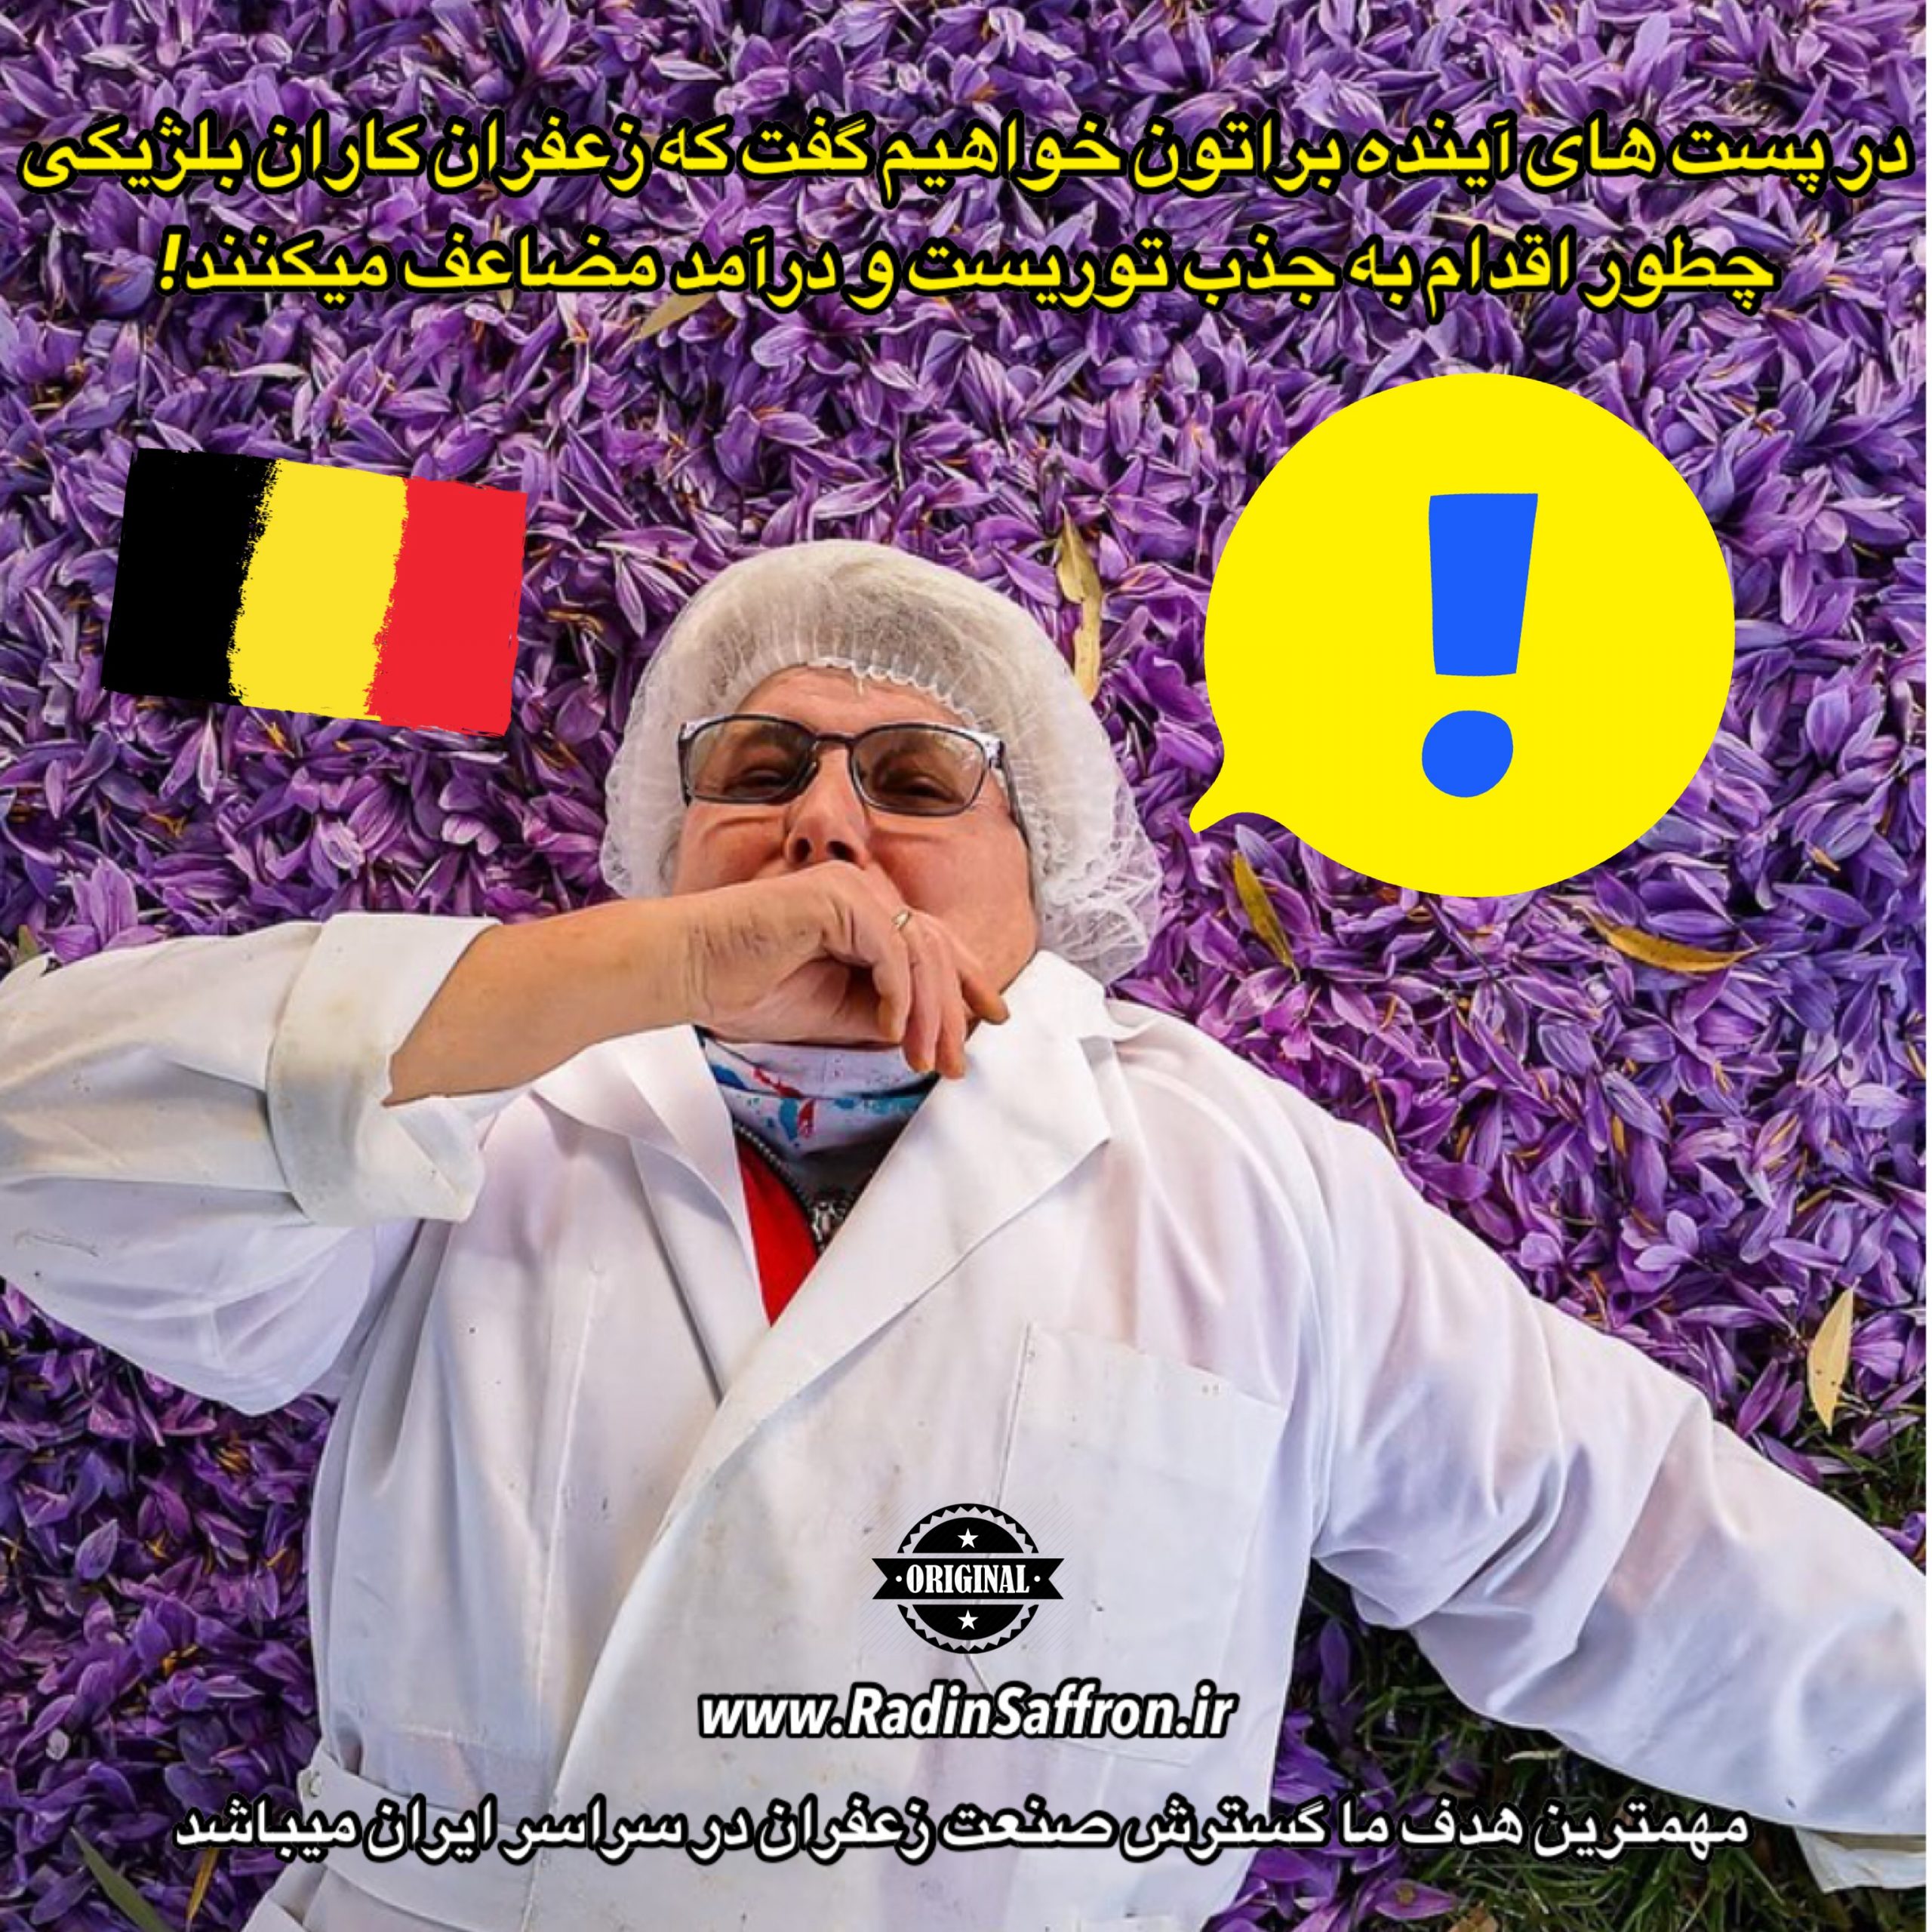 توریست گردشگری با زعفران در بلژیک